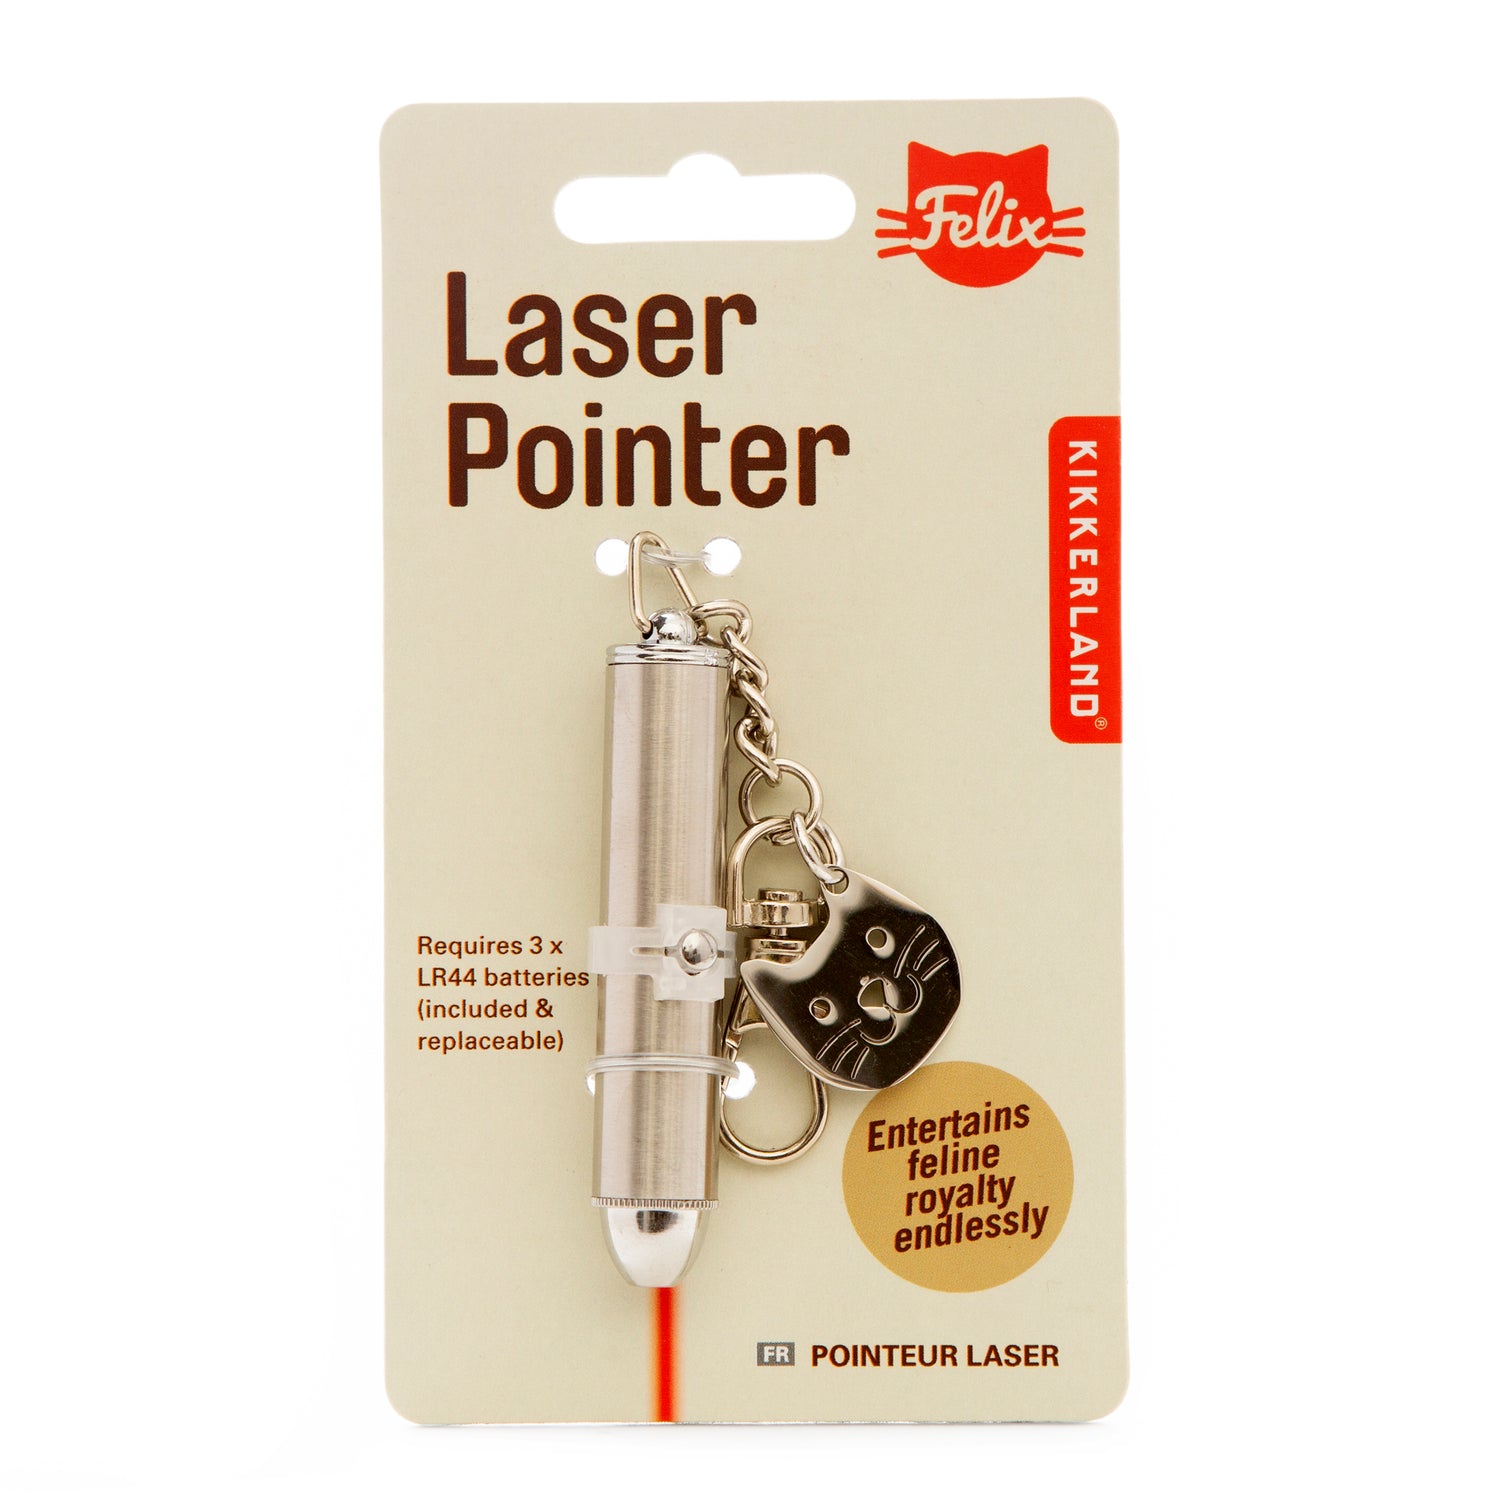 Pointeur Laser Kiko